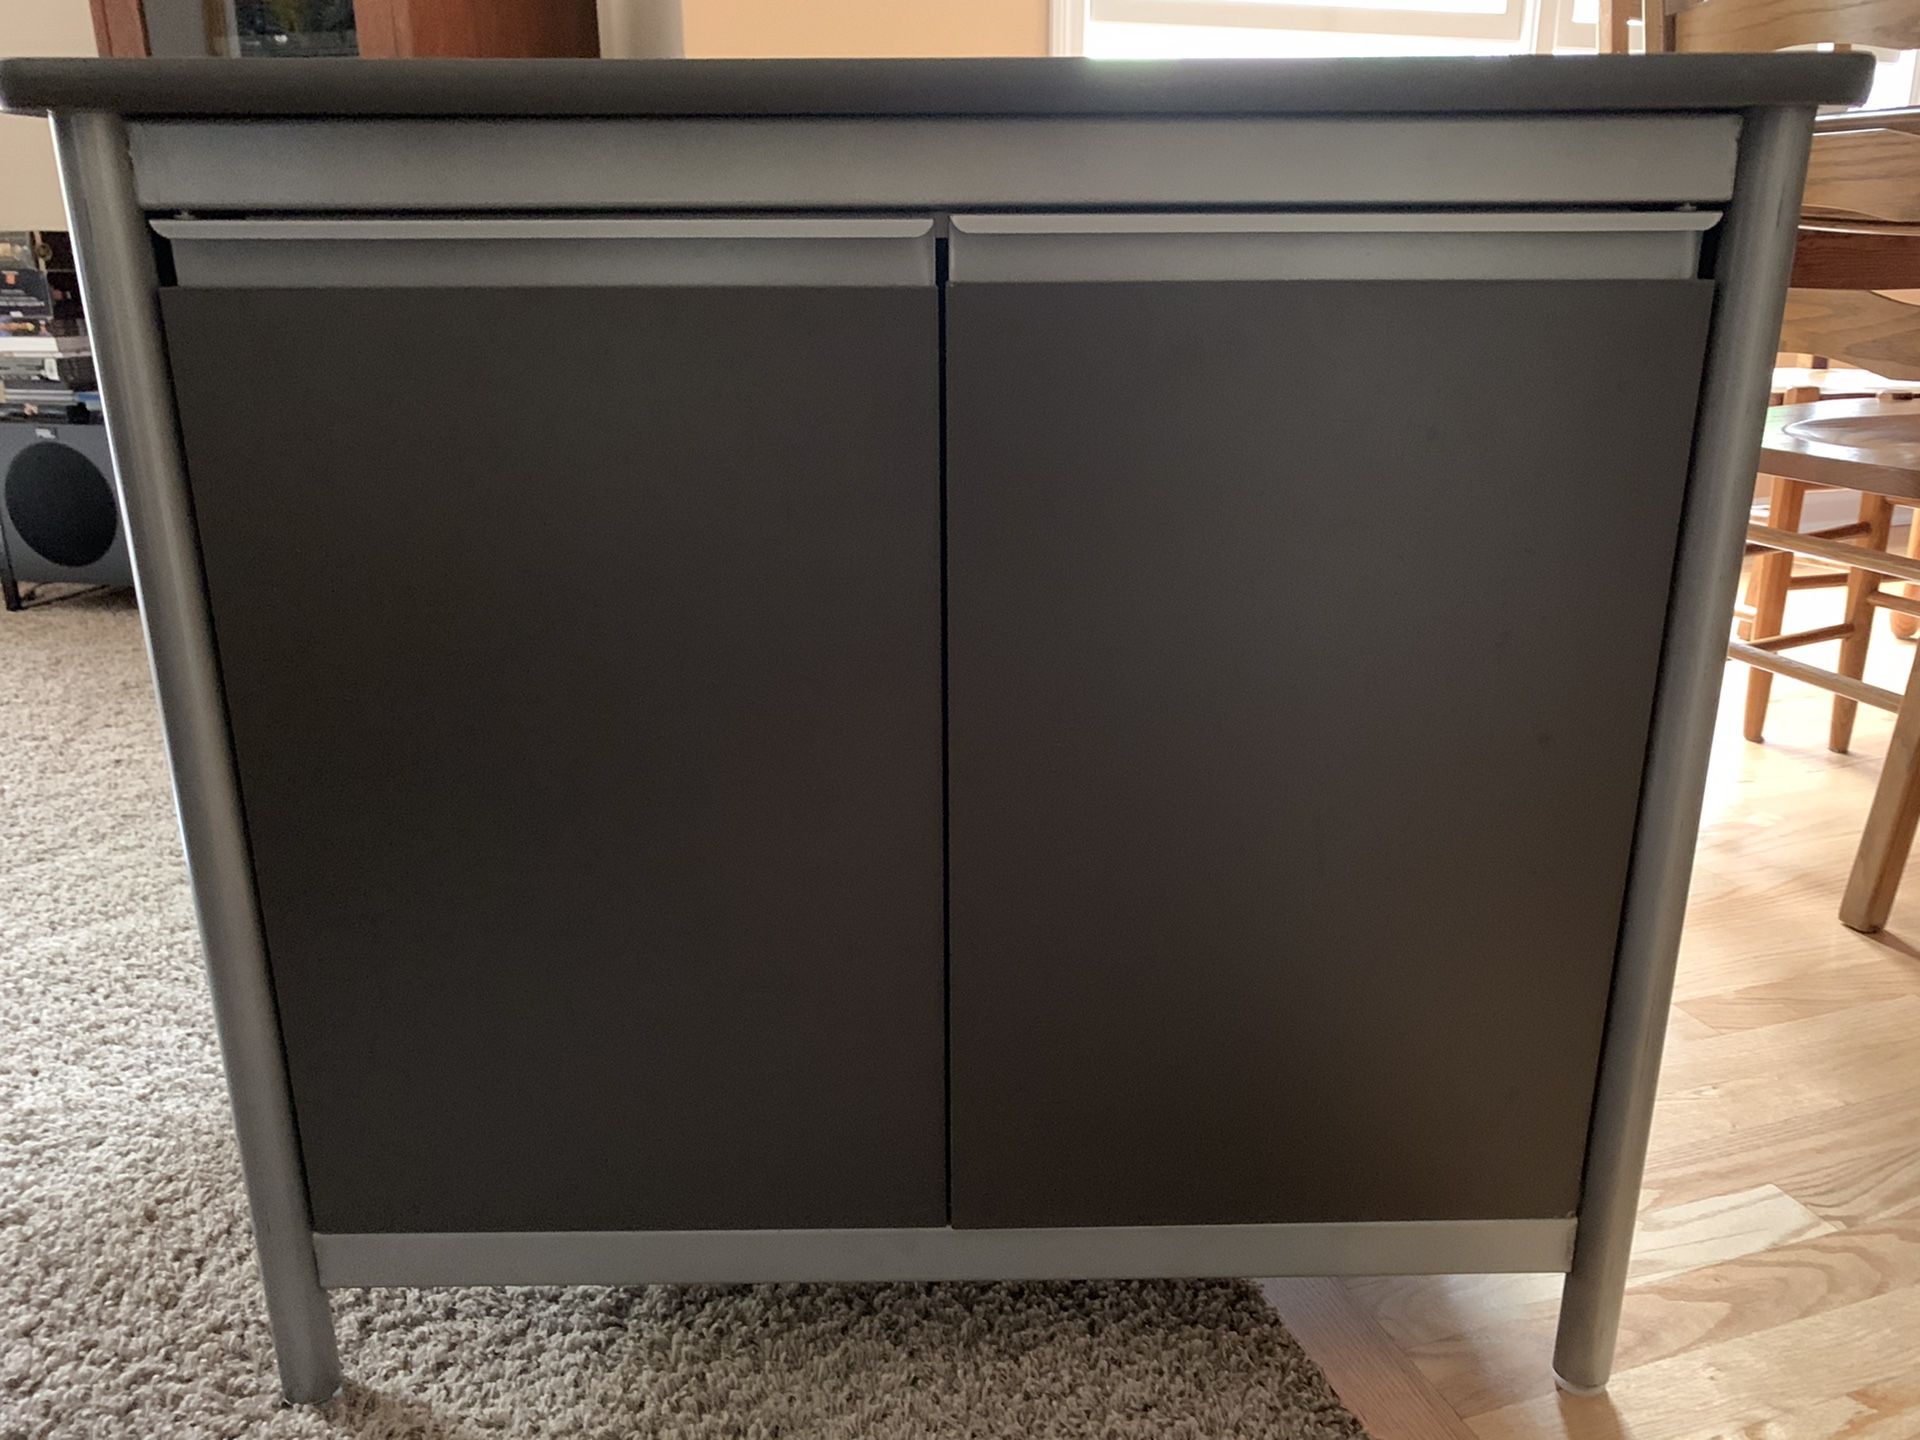 Dark grey metal commercial grade storage cabinet